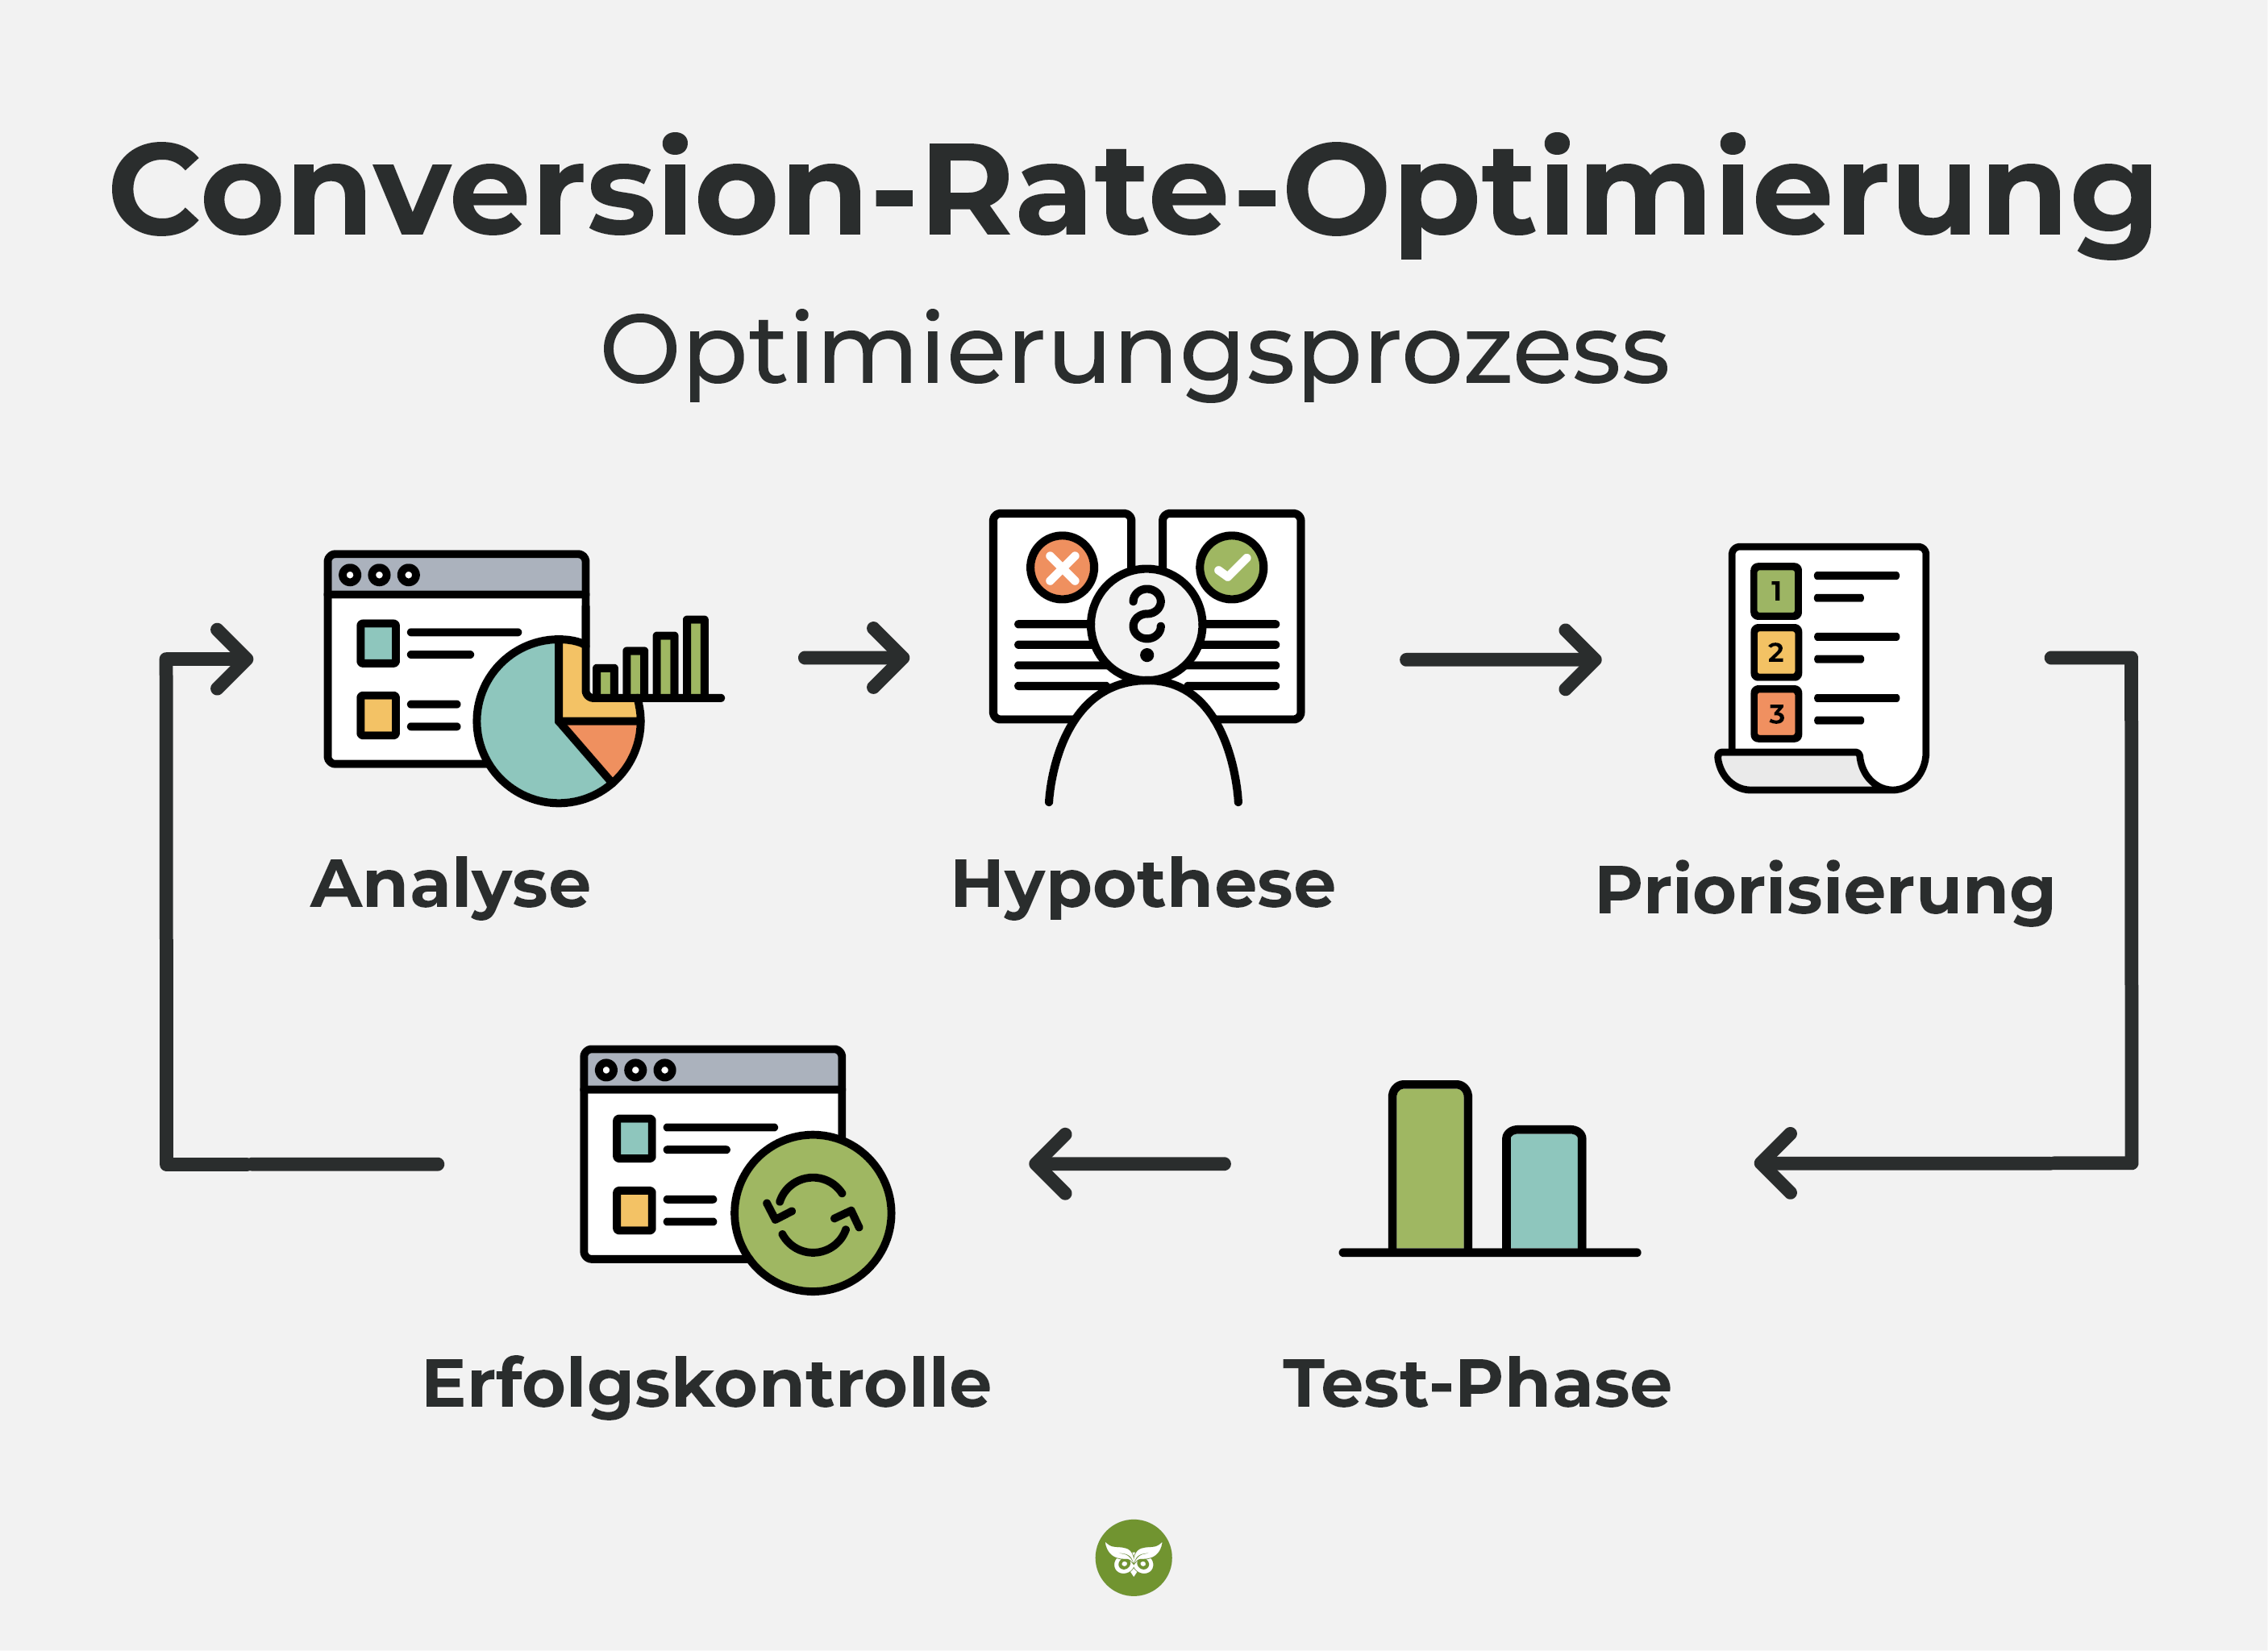 Optimierungsprozess für die Conversion-Rate-Optimierung